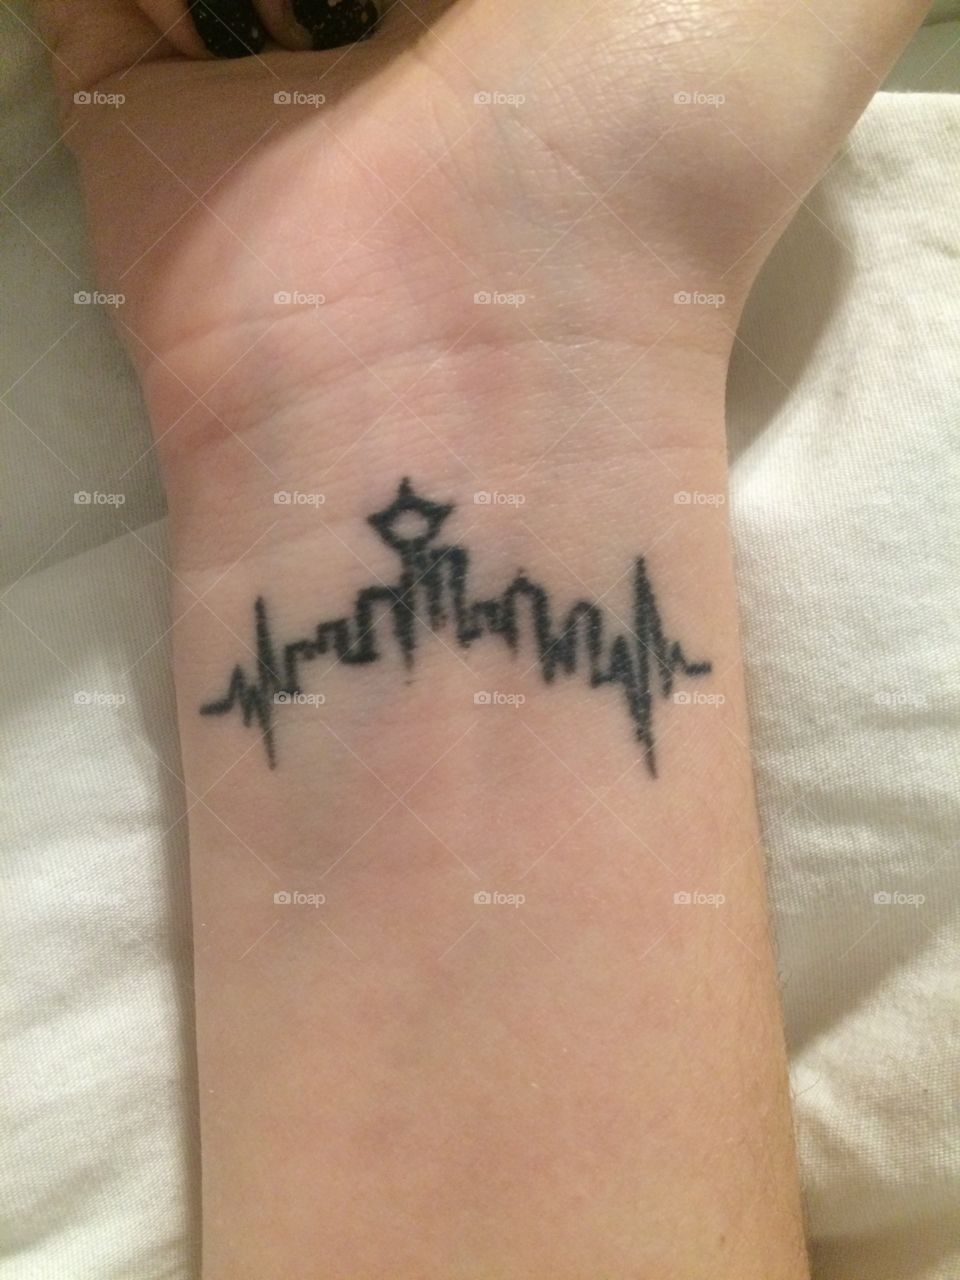 Grey's Anatomy Tattoo .
Seattle skyline 